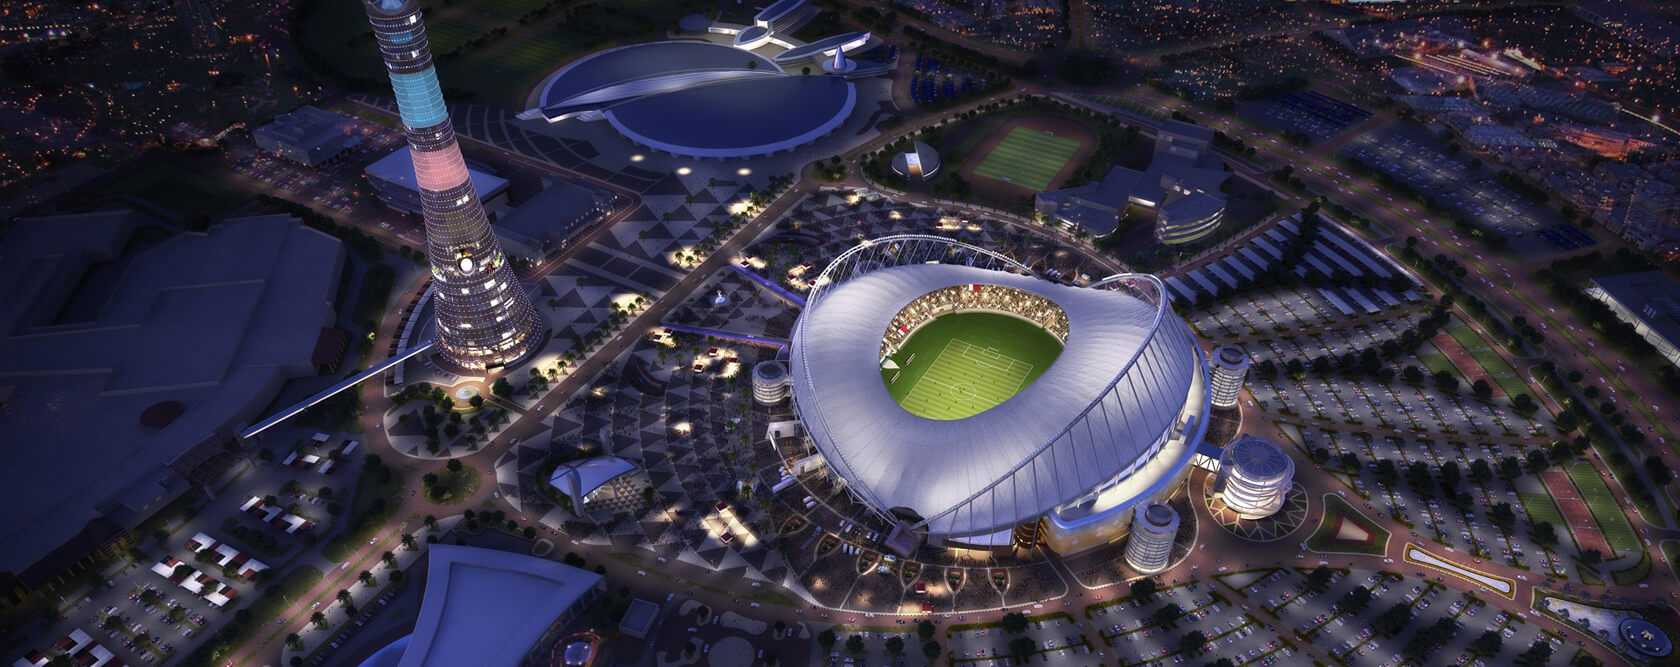 Lusail Stadium,Lusail Stadium In Qatar,lusail stadium,lusail stadium in qatar,maven trading and installation wll in qatar